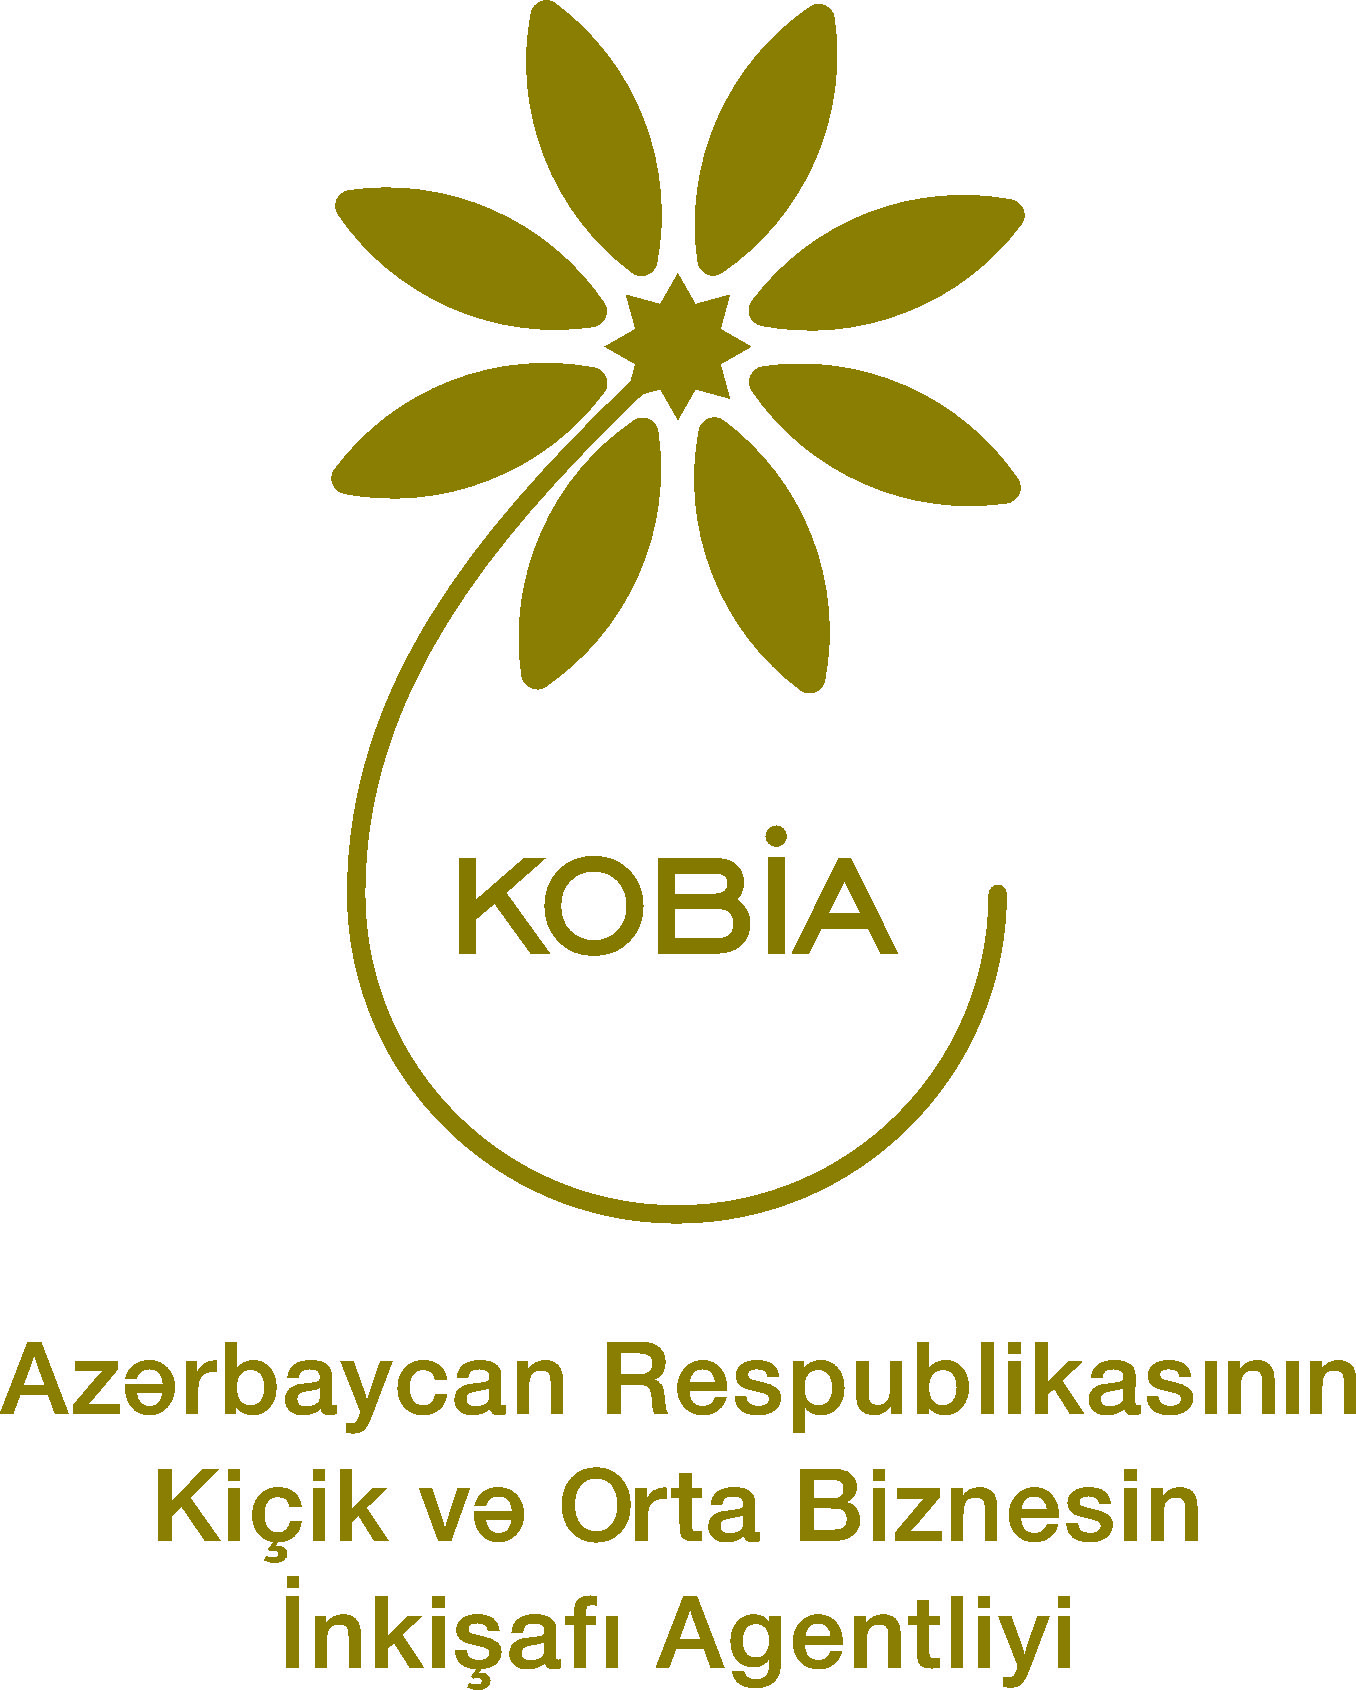 Kiçik və Orta Biznesin İnkişafı Agentliyi (KOBİA) 